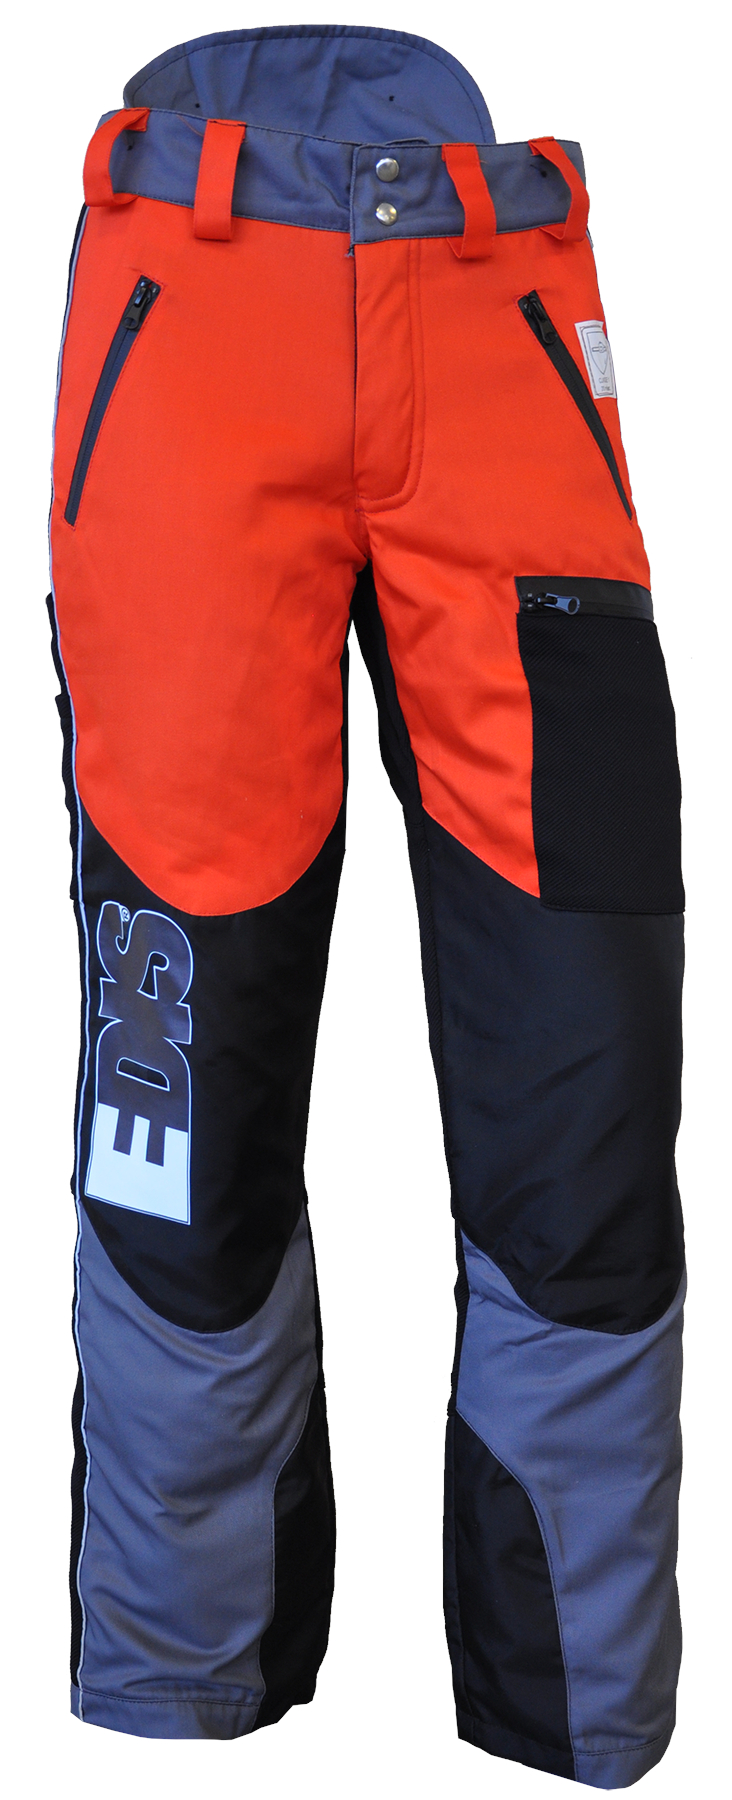 Pantaloni antitaglio per uso motosega EDIS - STELVIO colore ARANCIONE/NERO  (fine serie)